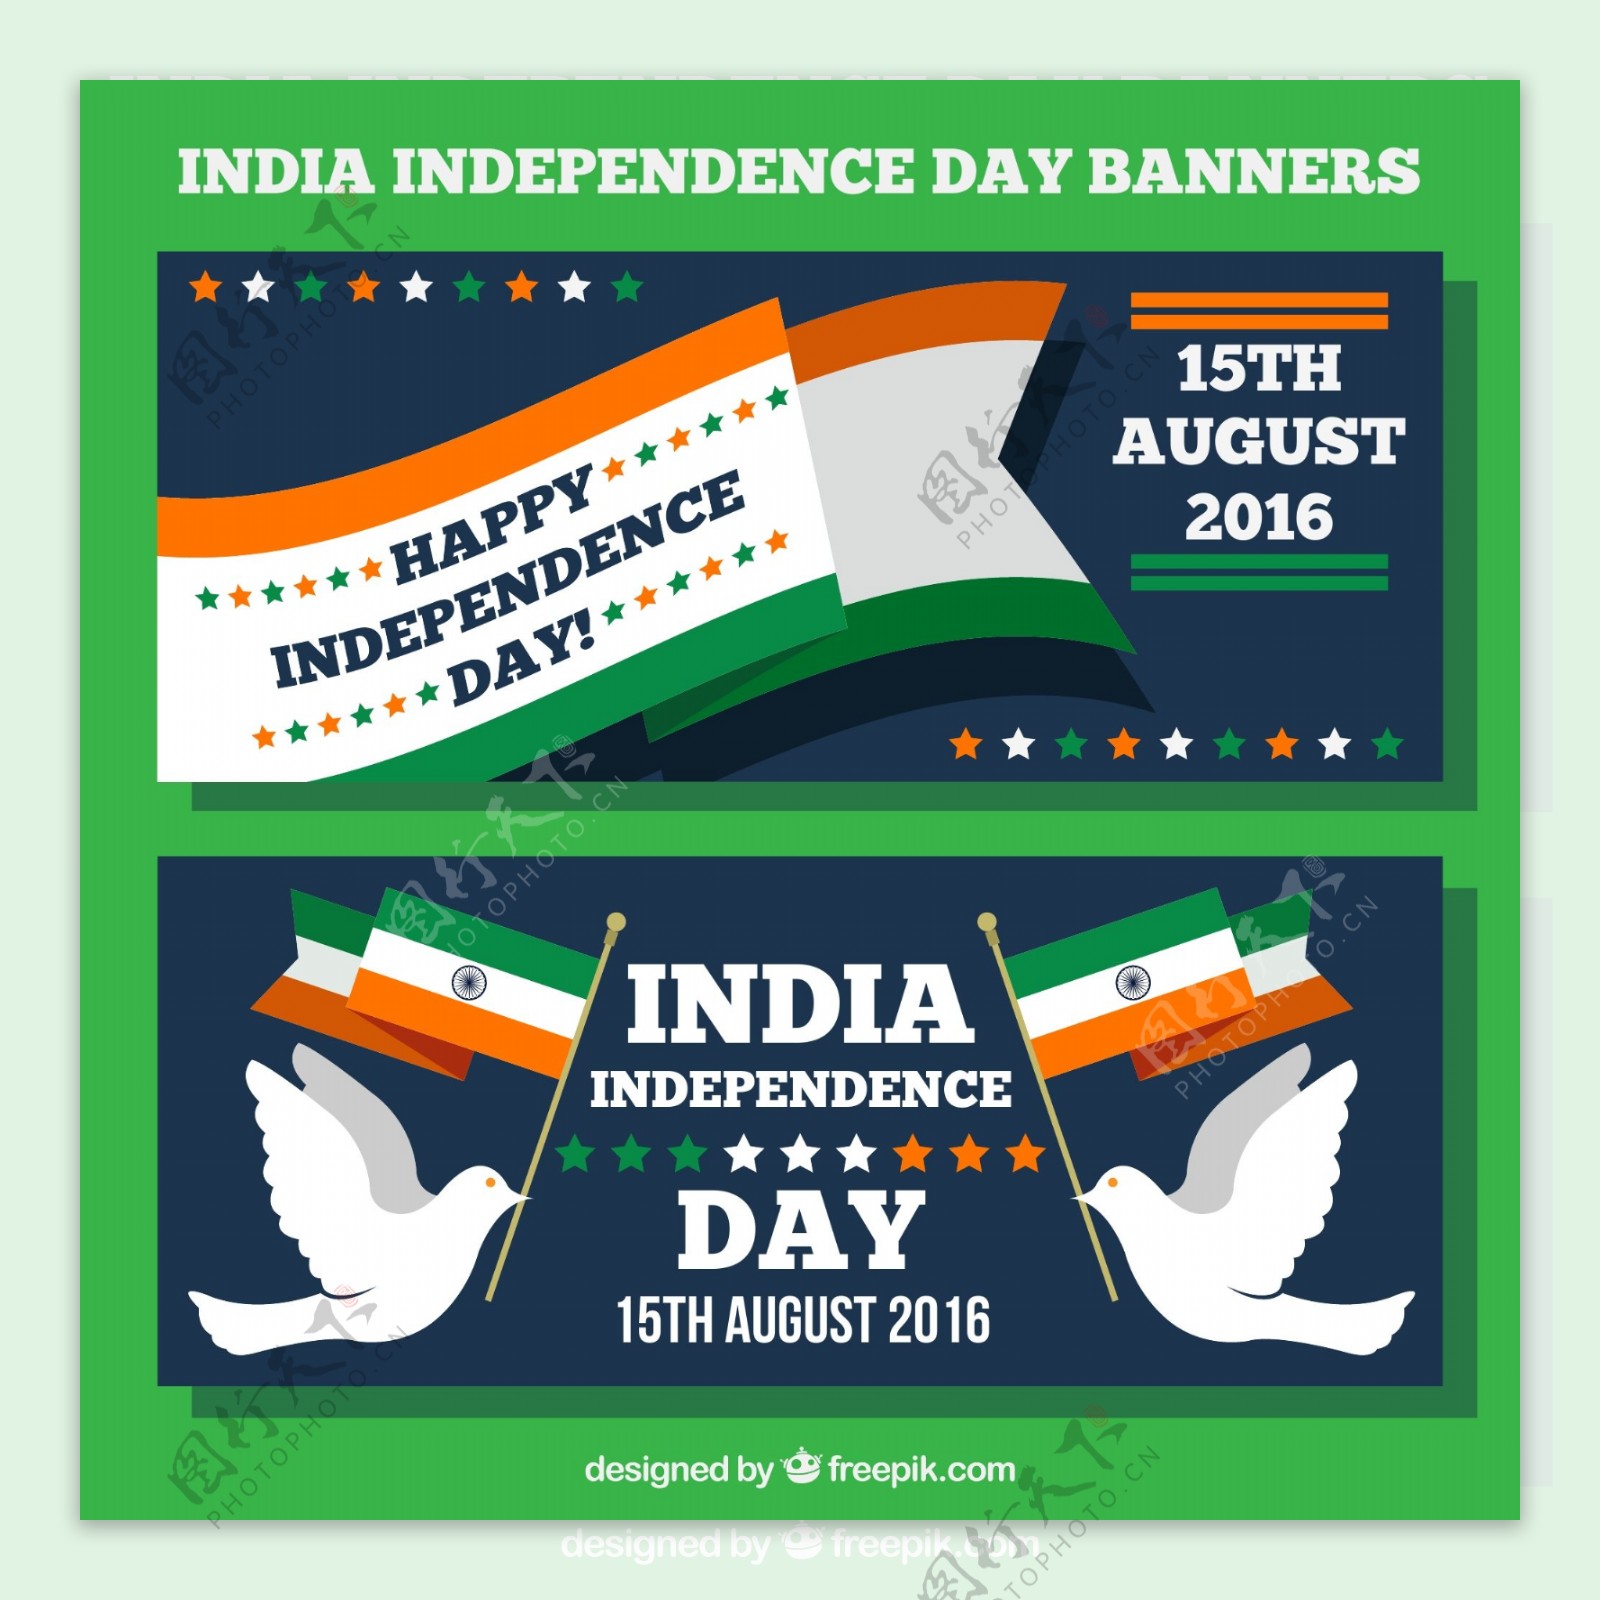 印度独立日旗帜横幅